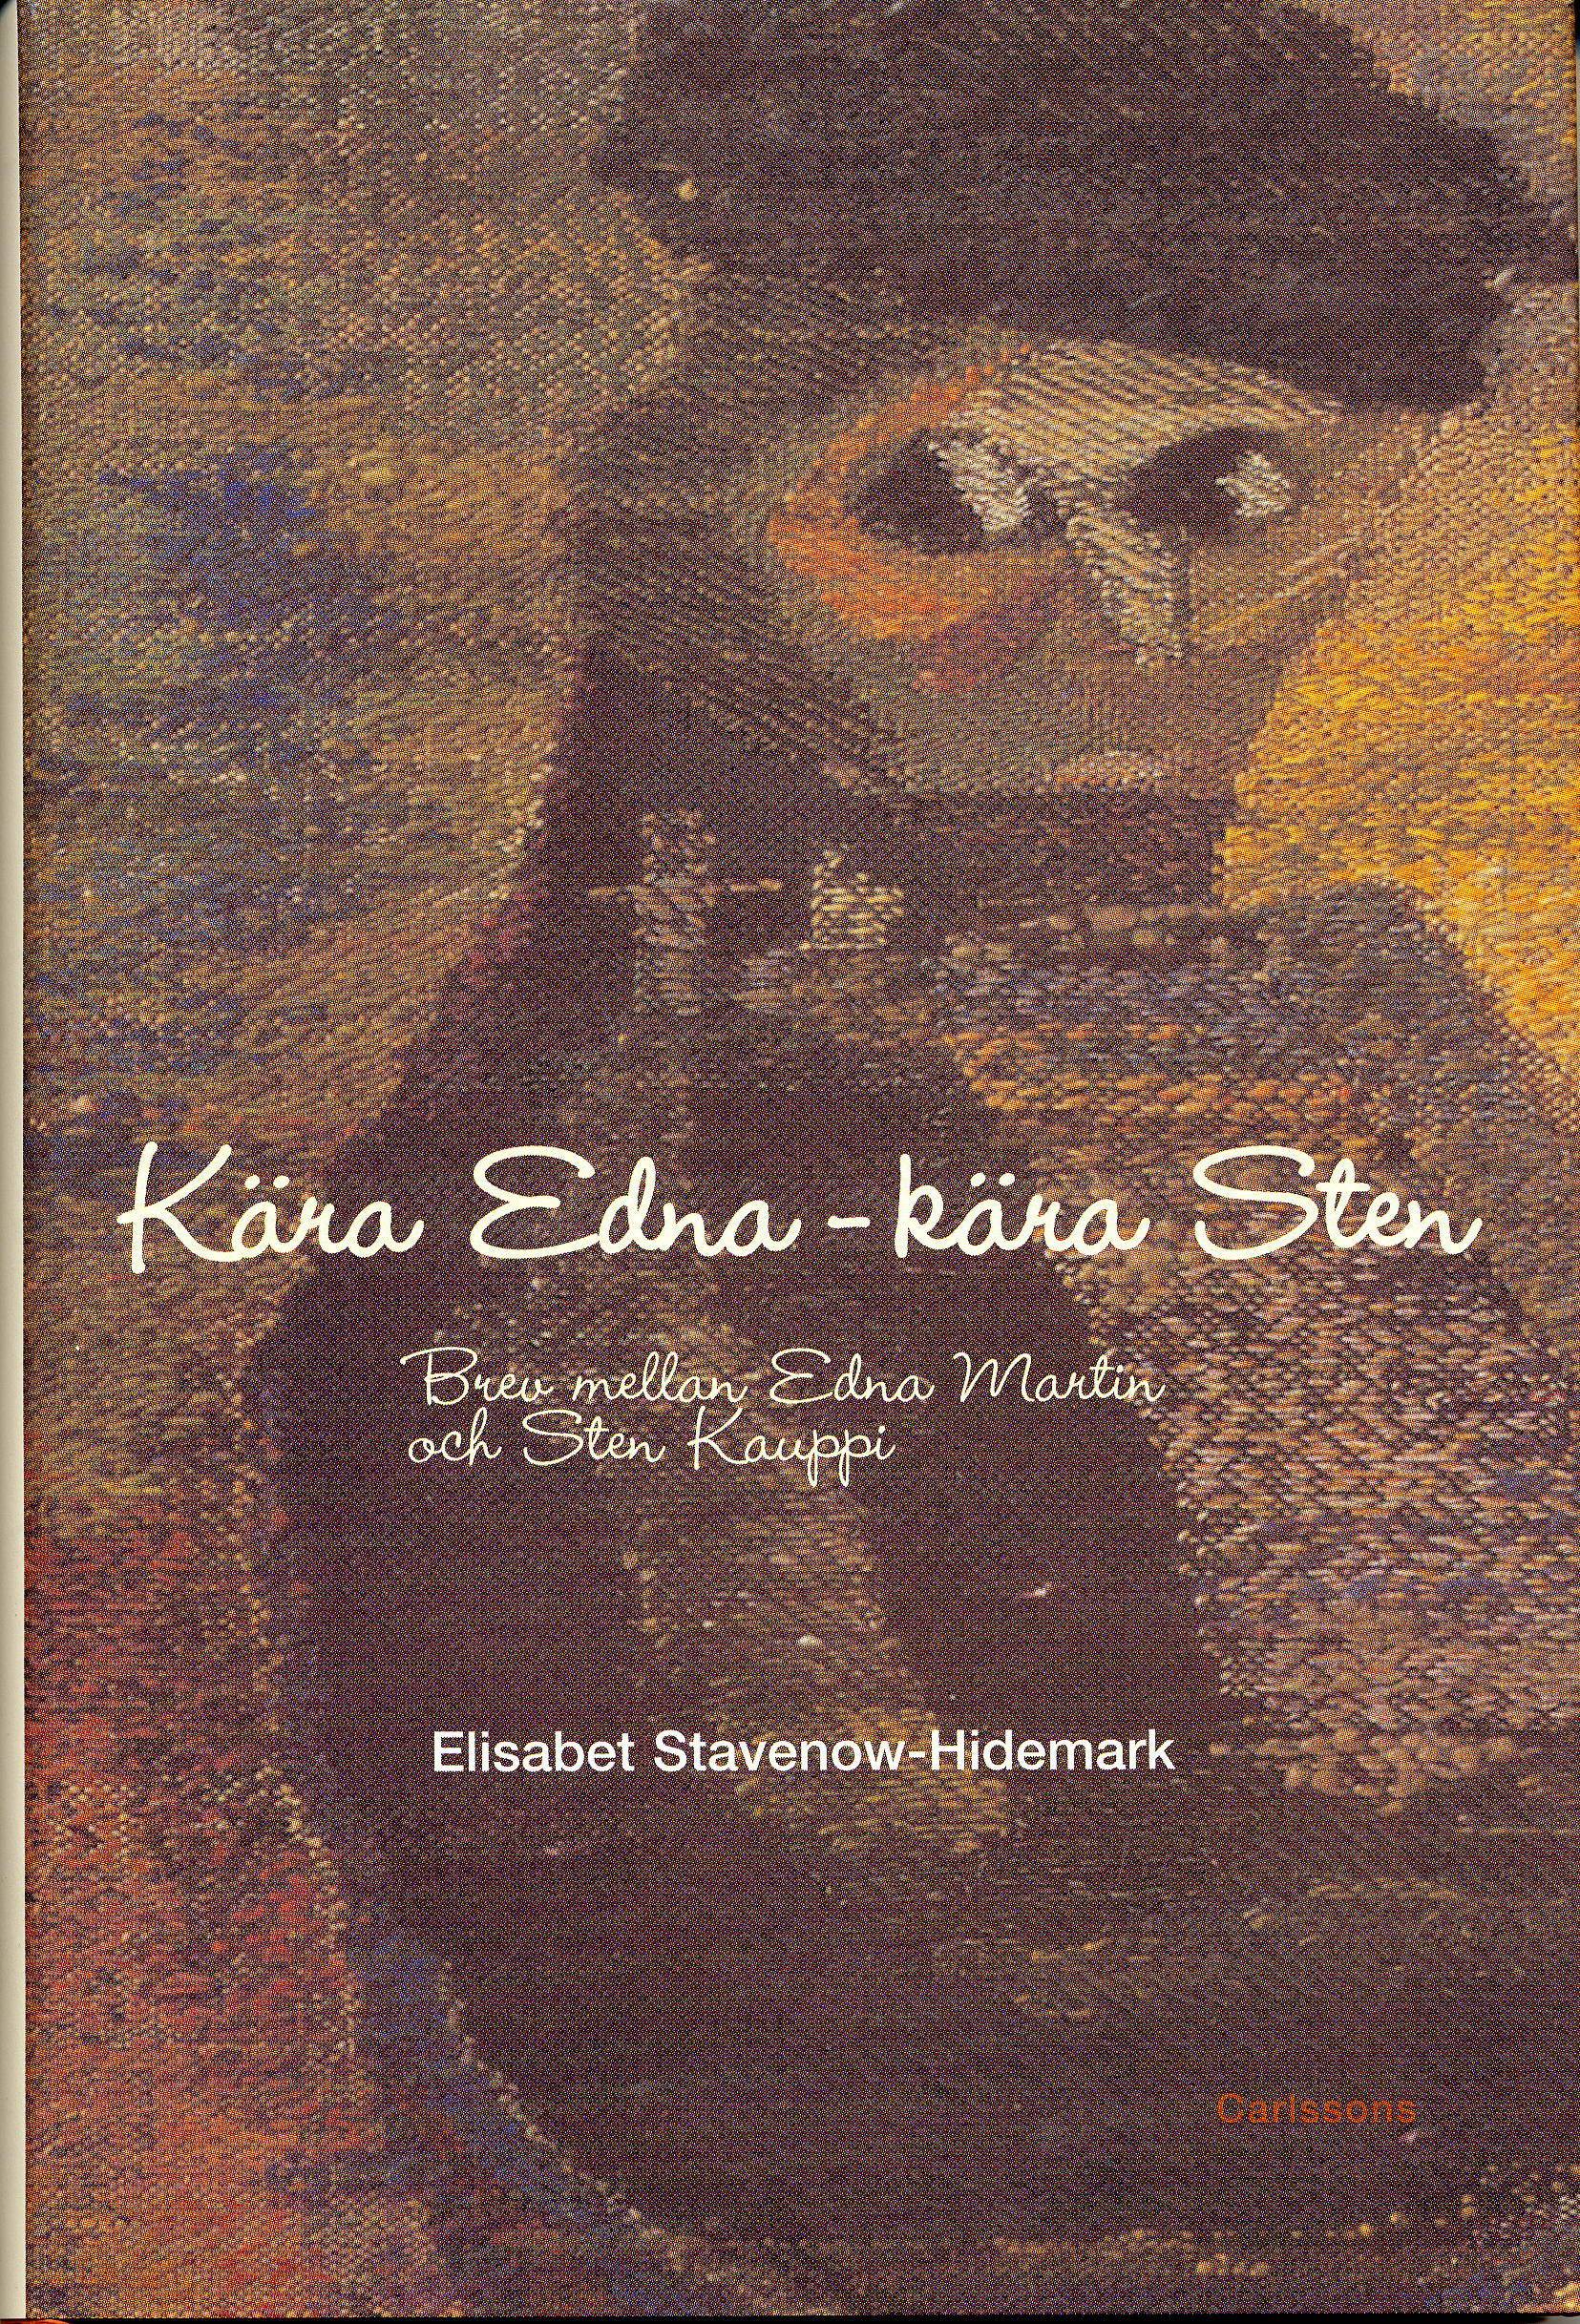 Kära Edna - Kära Sten : brev mellan Edna Martin och Sten Kauppi 1951-1956